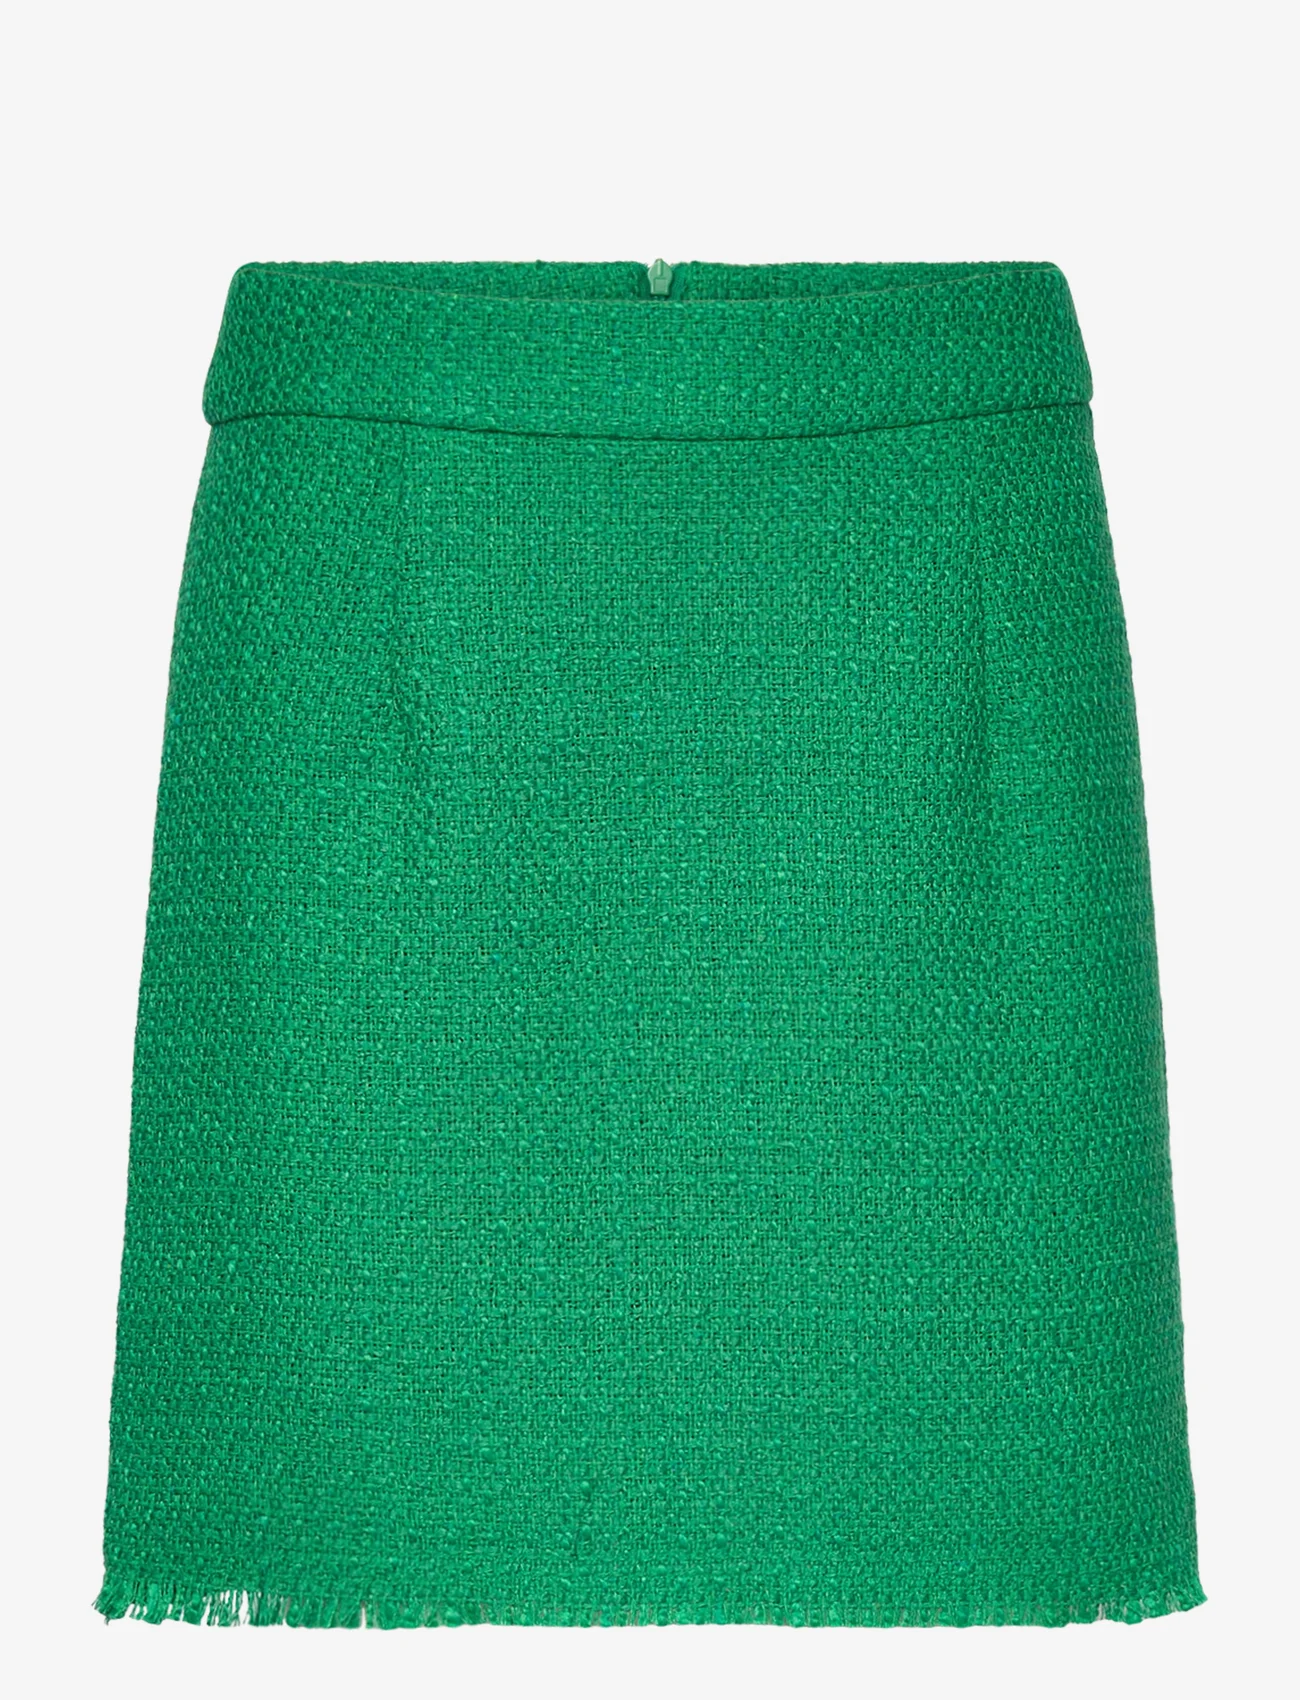 Saint Tropez - BirdieSZ Skirt - korta kjolar - verdant green - 0